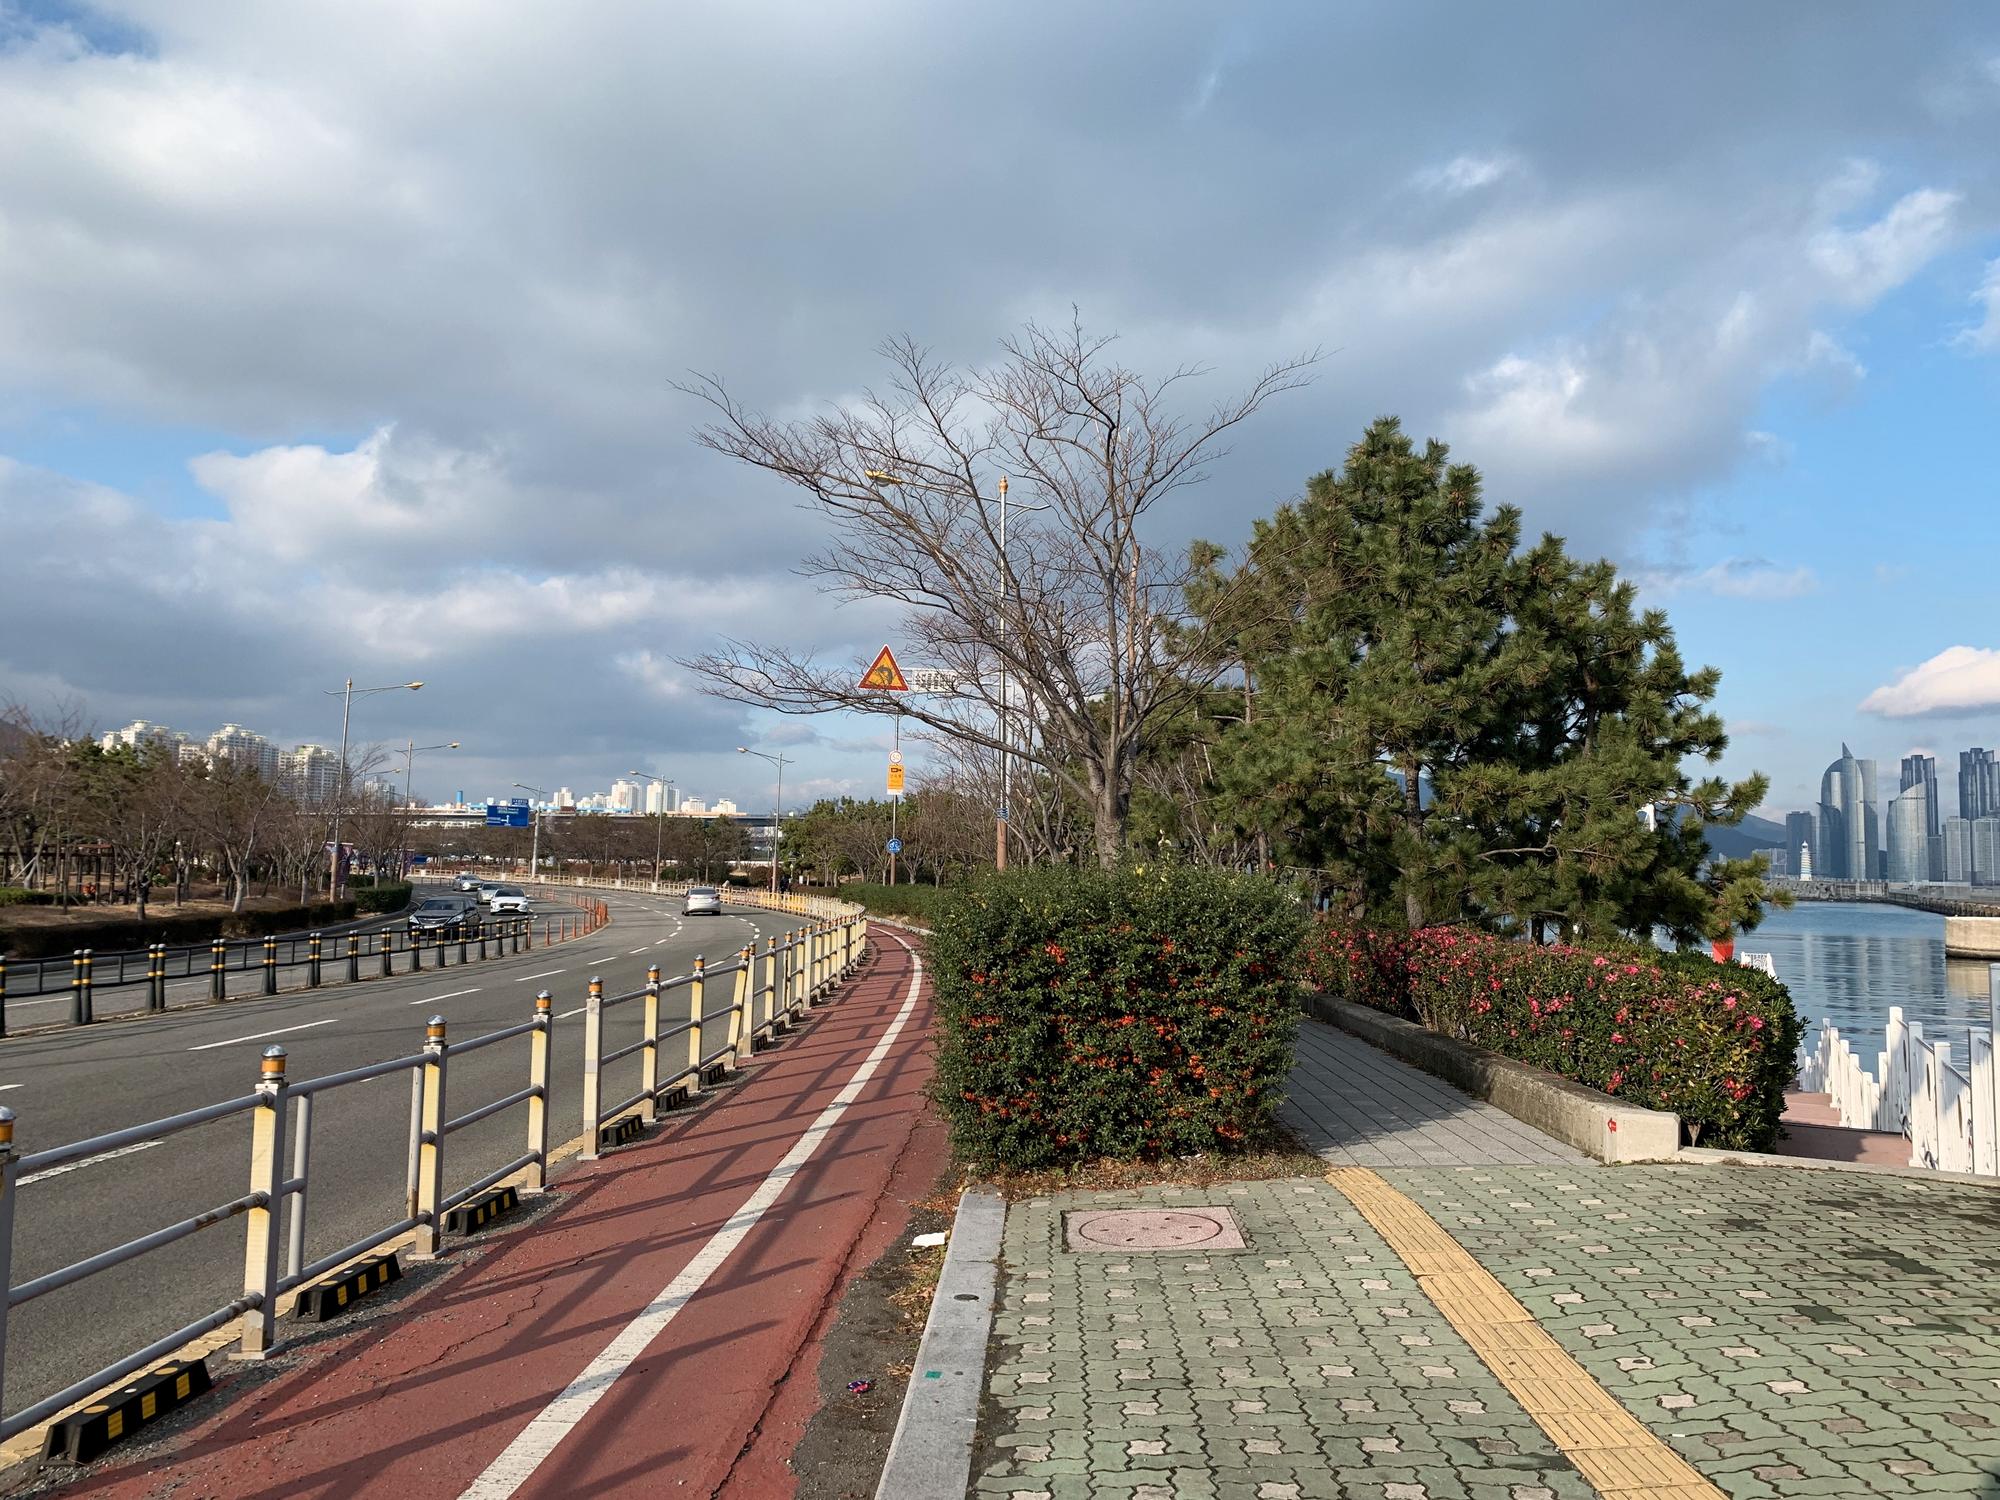 🇰🇷 Пусан, Южная Корея, декабрь 2019.